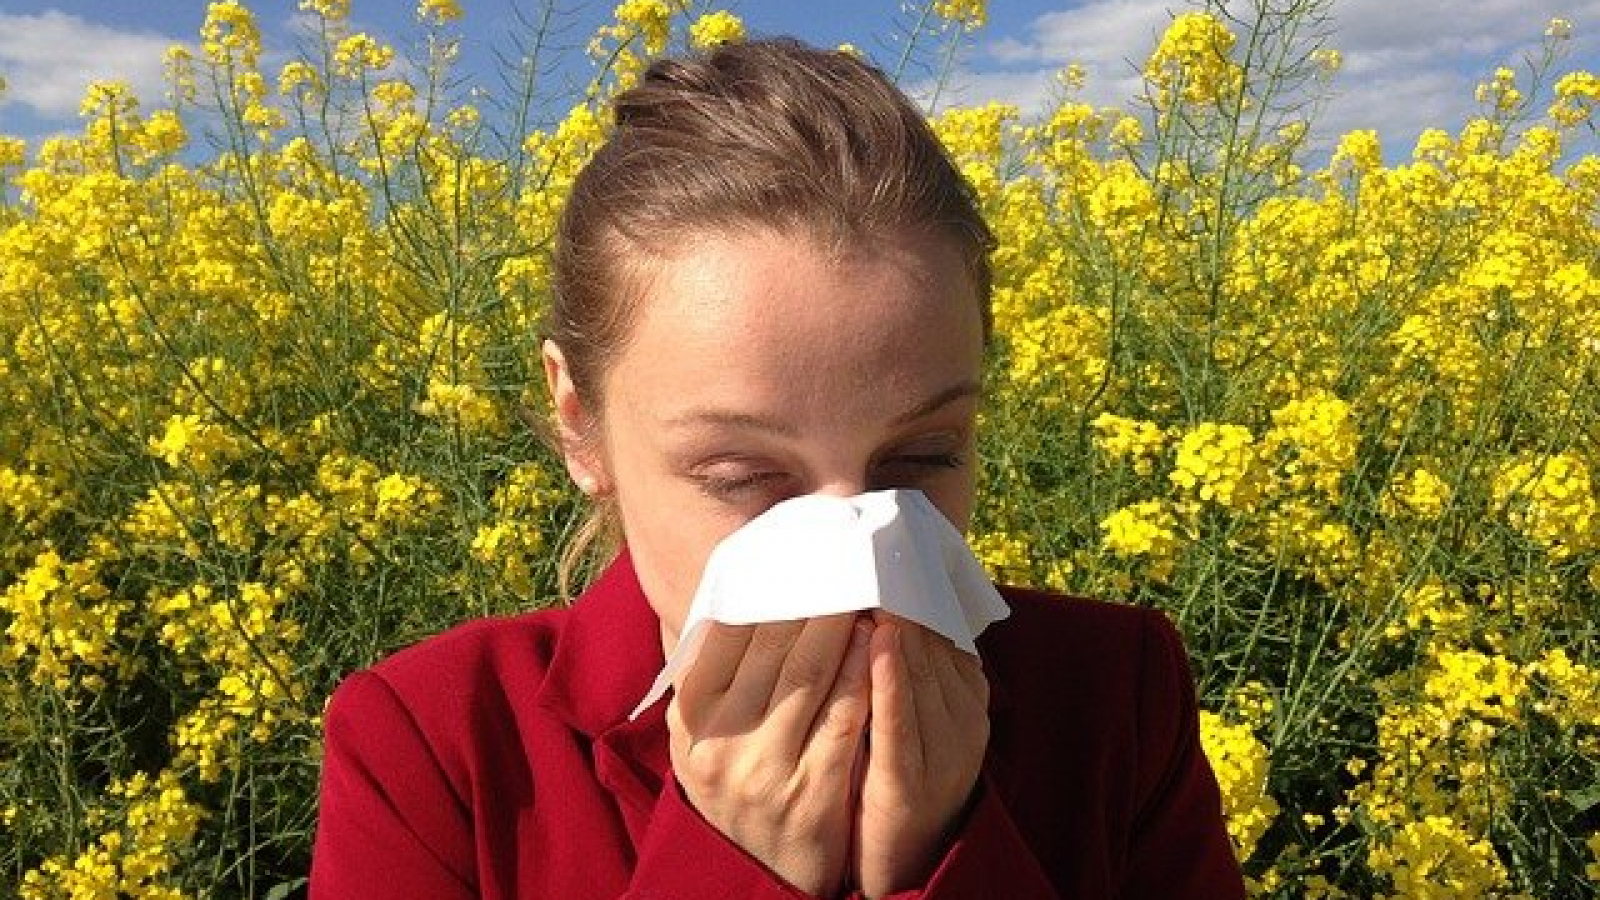 “Am manifestari alergice,dar nu mi se depisteaza alergenul”